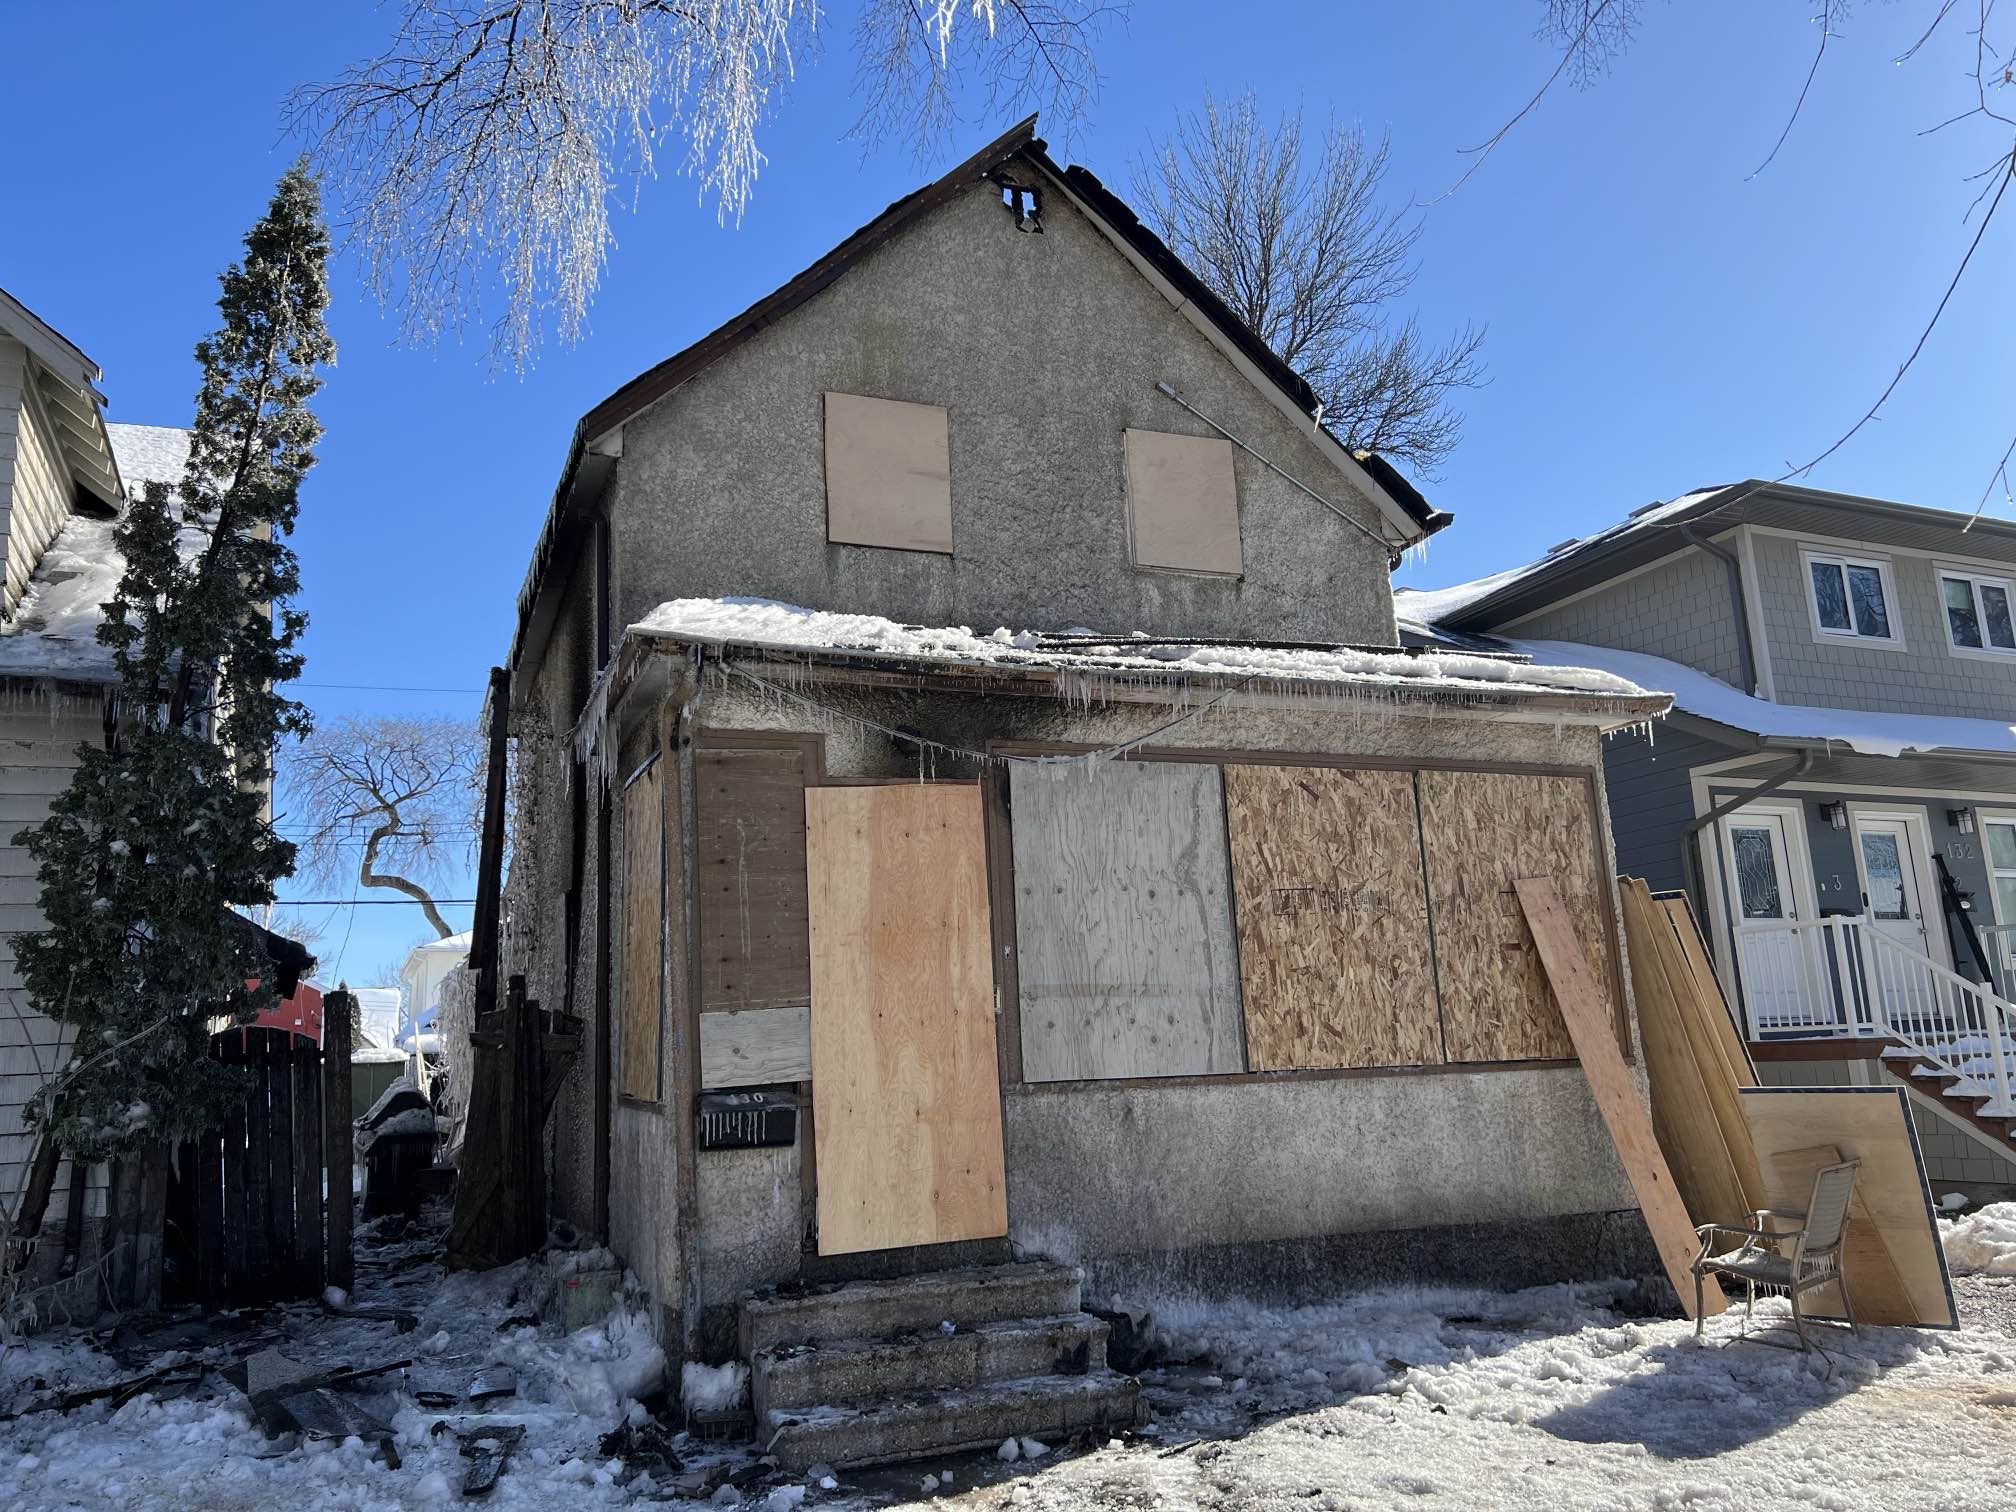 Fire engulfs multi-family home on Hallet Street in Winnipeg